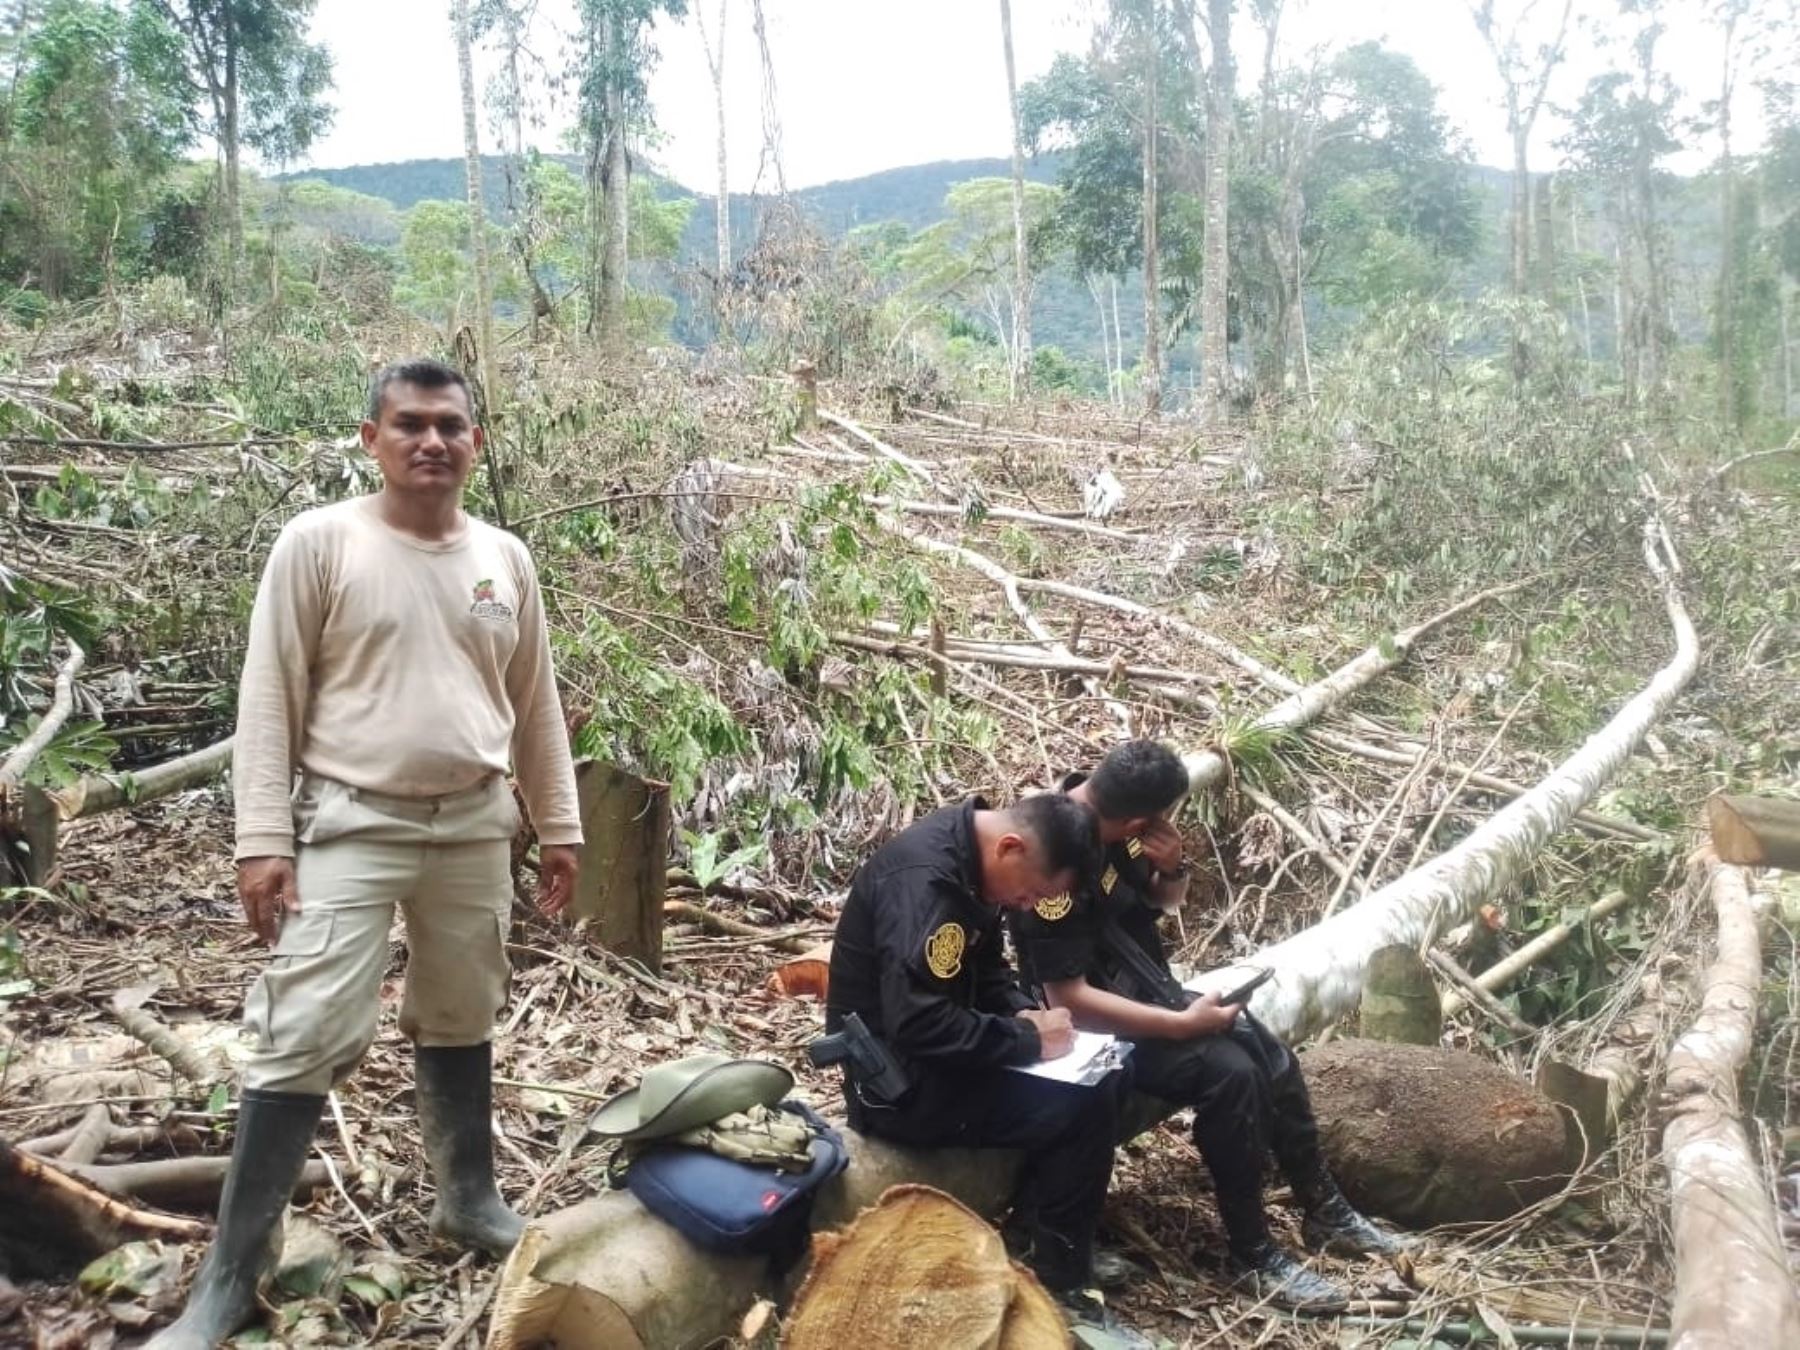 Más de 500 árboles de especies forestales nativas fueron talados ilegalmente empleando una motosierra por desconocidos en el interior del área de conservación regional Cordillera Escalera, ubicado en San Martín. ANDINA/Difusión